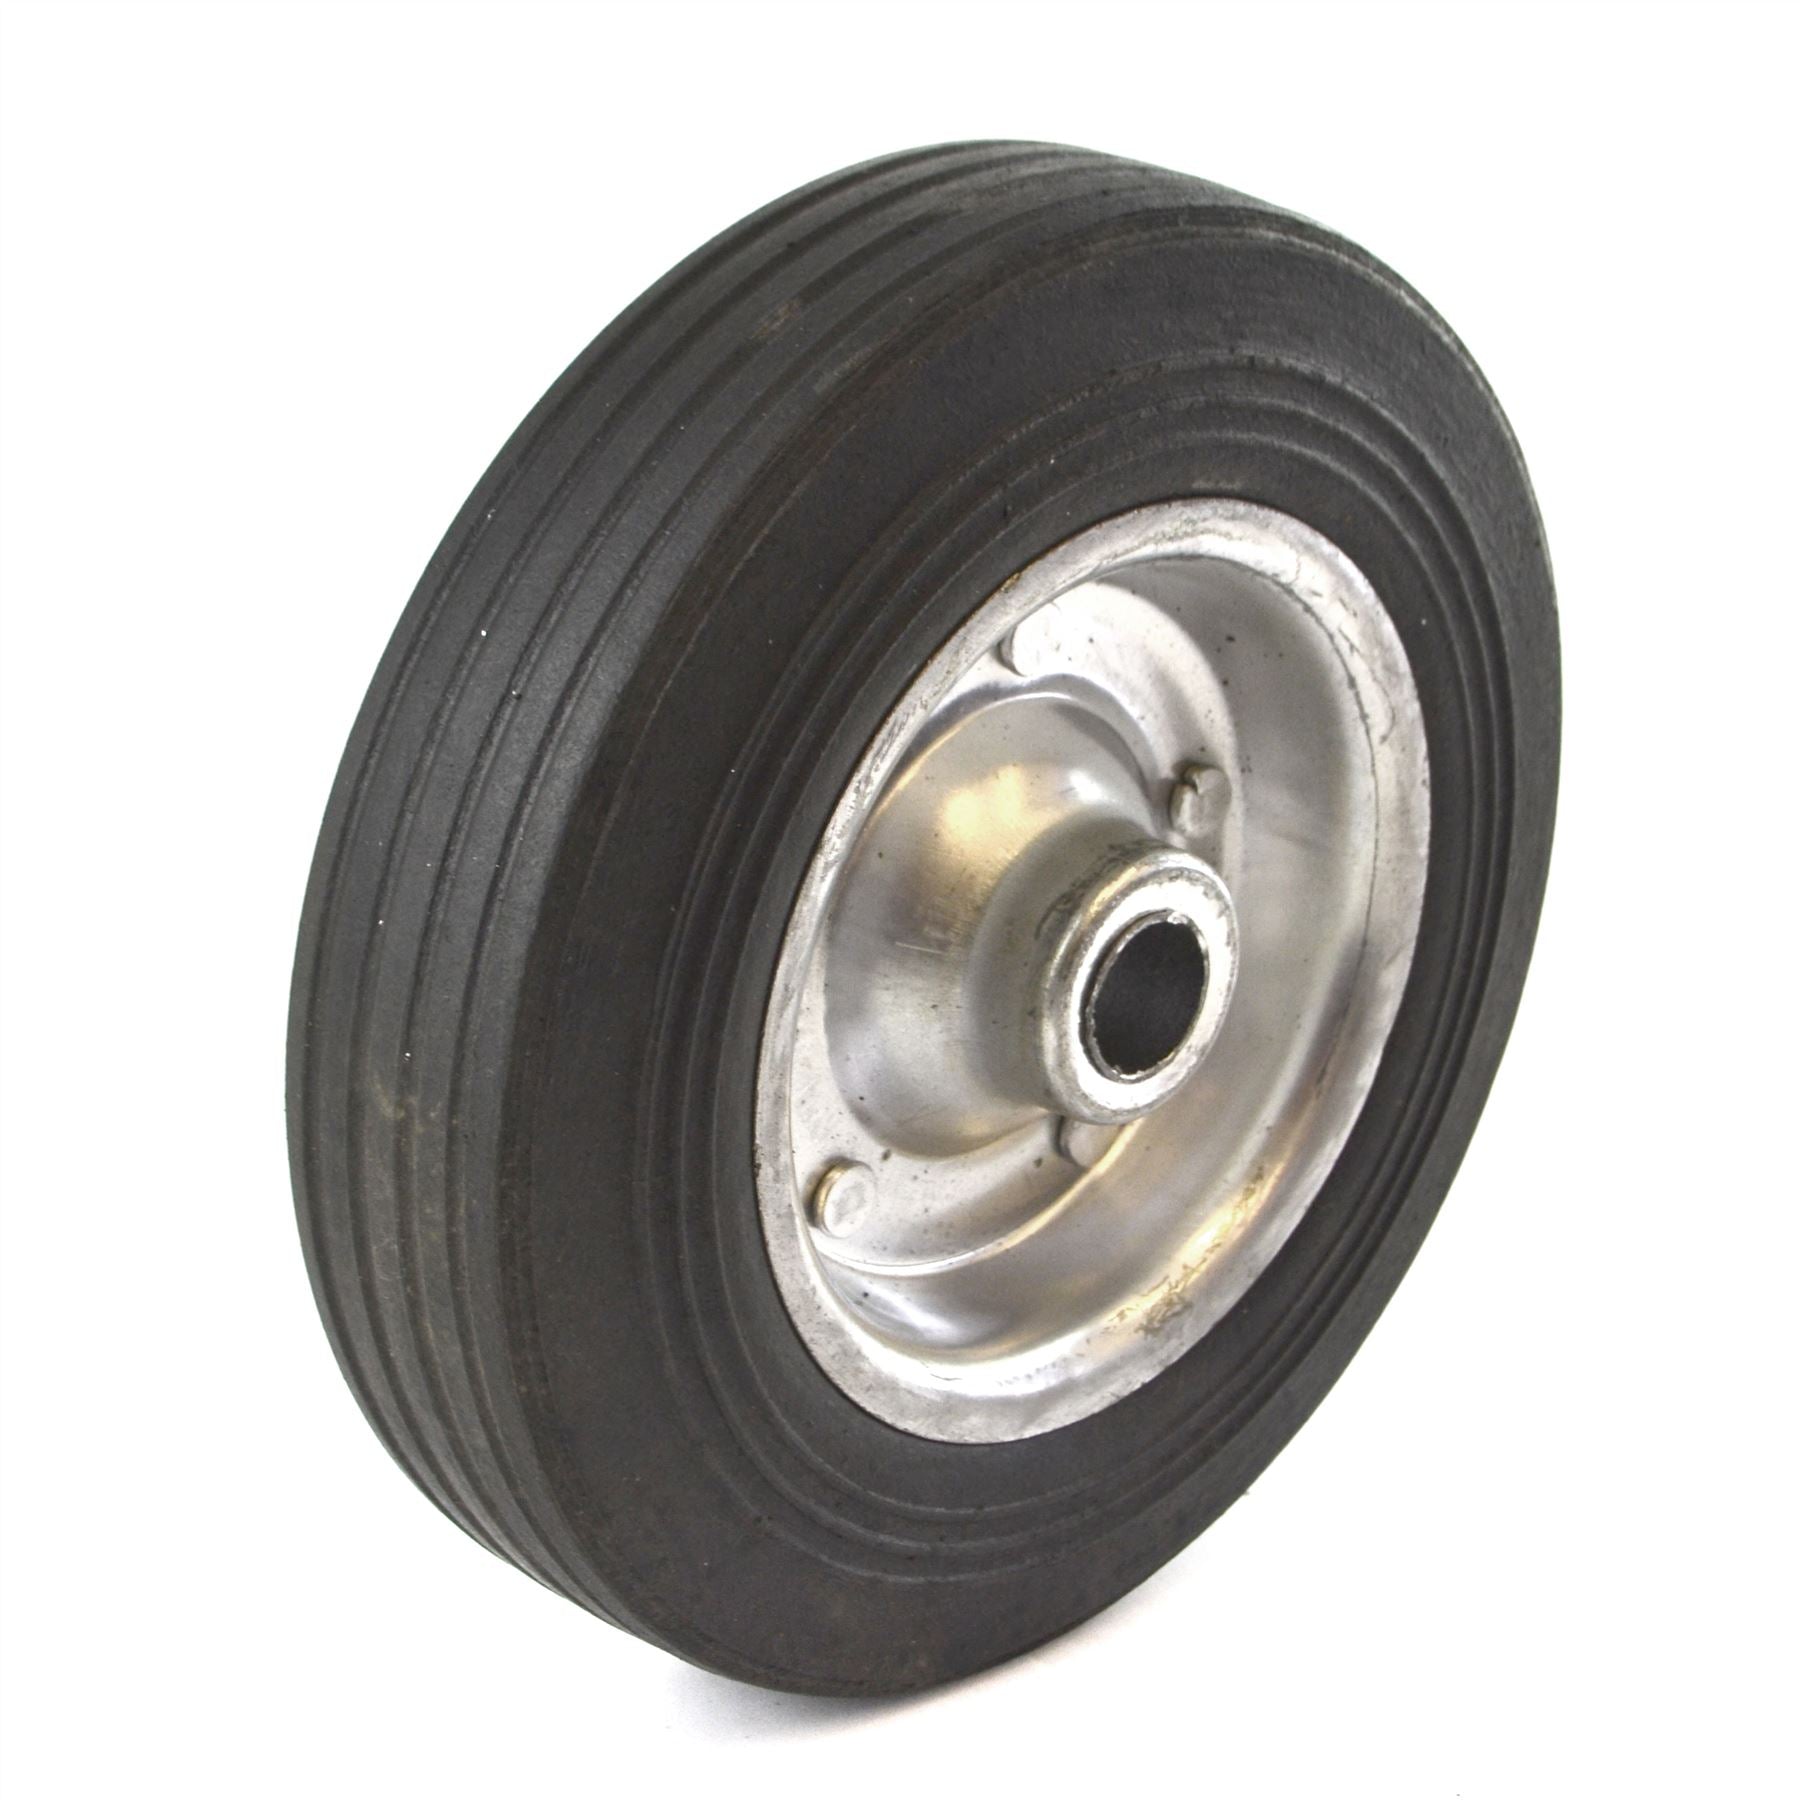 8" (200mm) Steel Replacement Jockey Wheel Tyre Tire Trailer 19mm Bore TE929